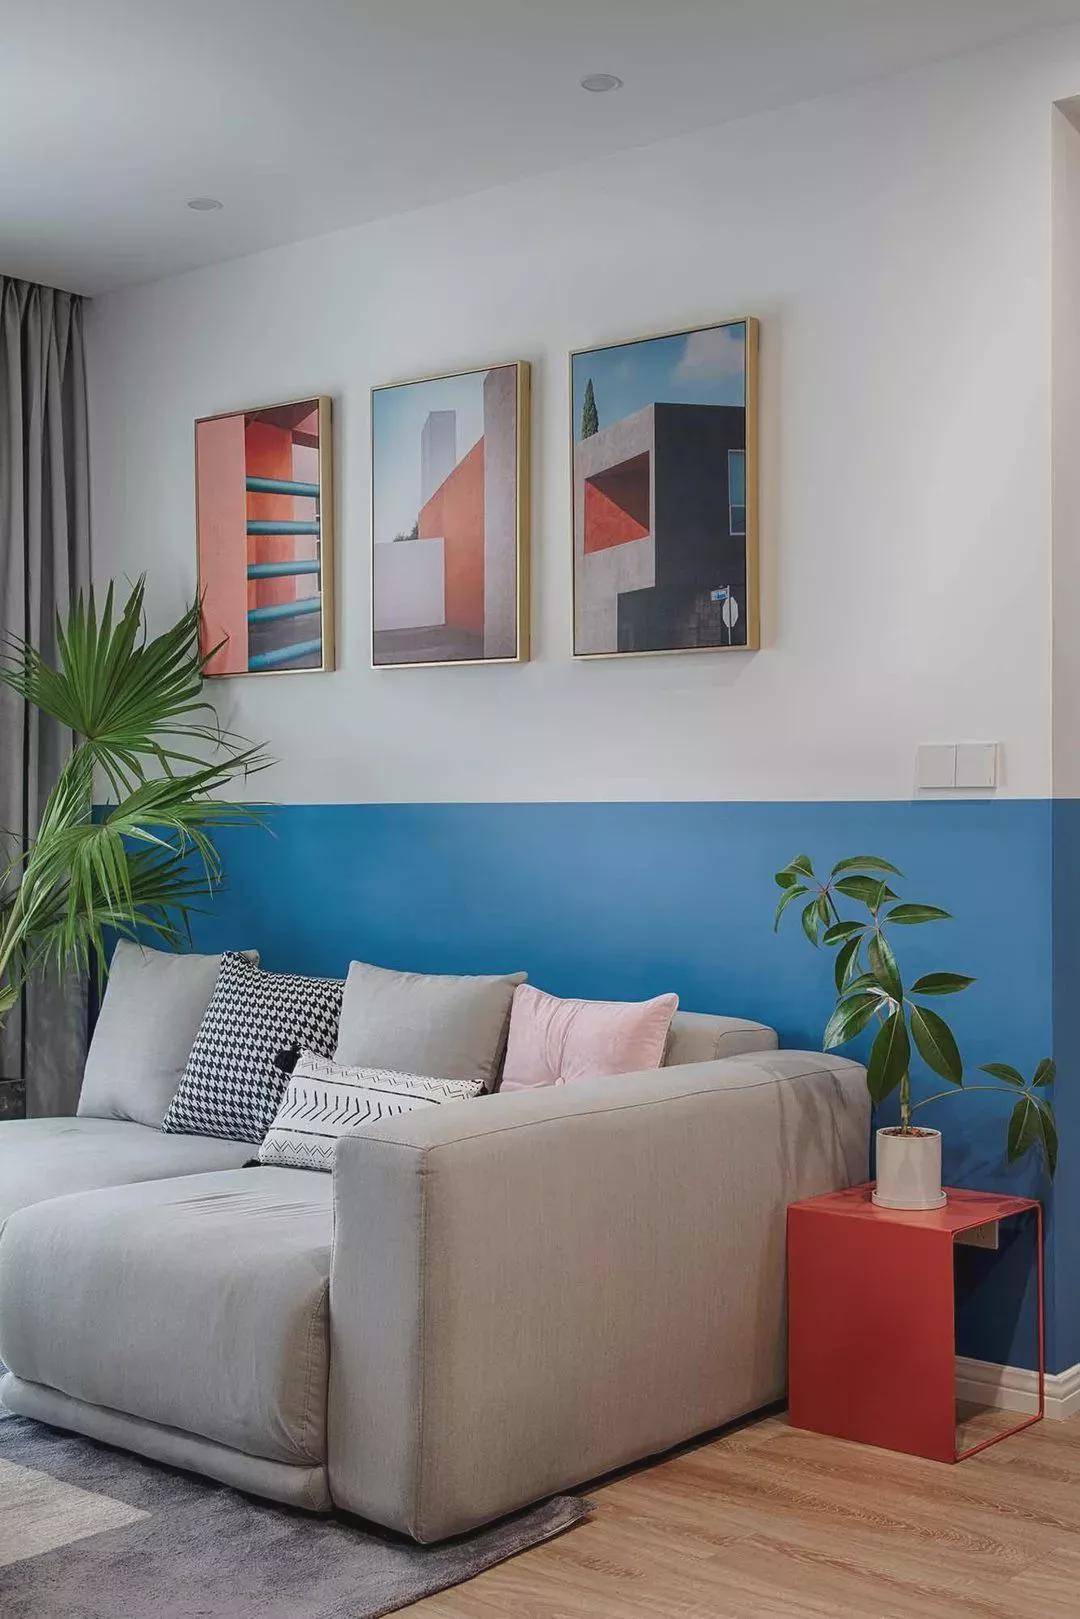 86㎡两室,蓝白拼接墙面,从客厅美到卧室,床桌一体省空间